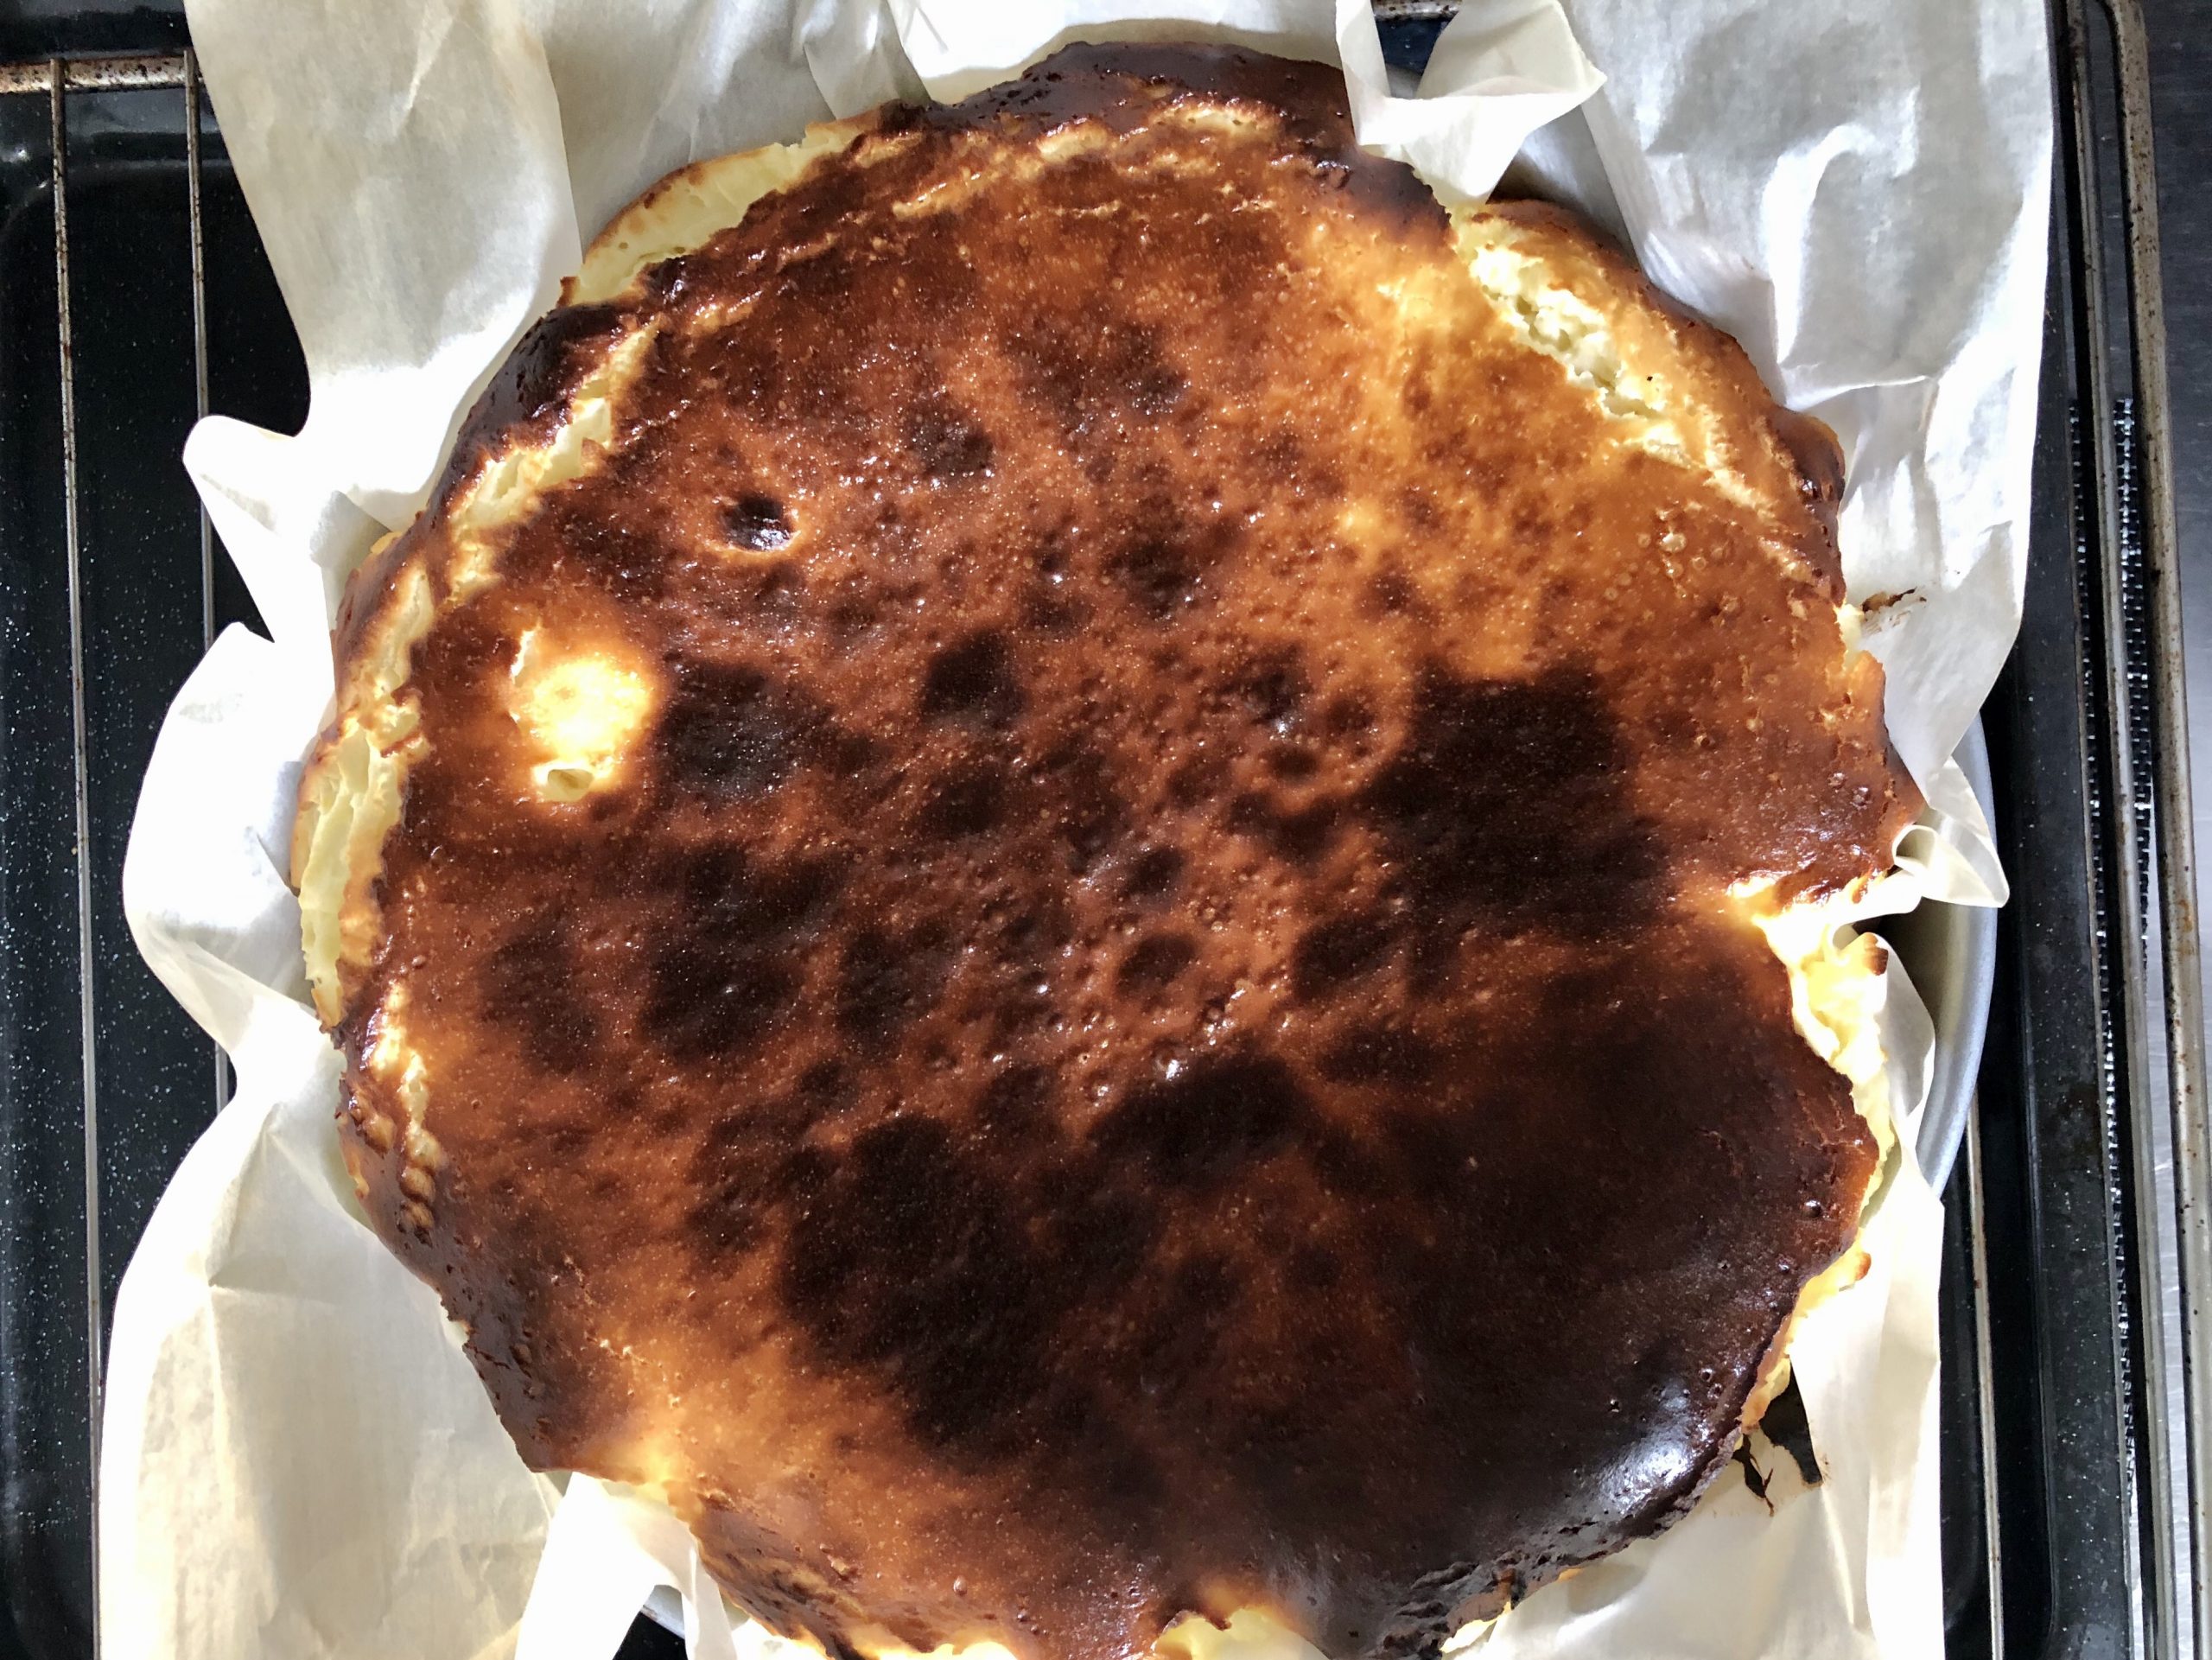 Basque Burnt Cheesecake (Tarta de Queso)